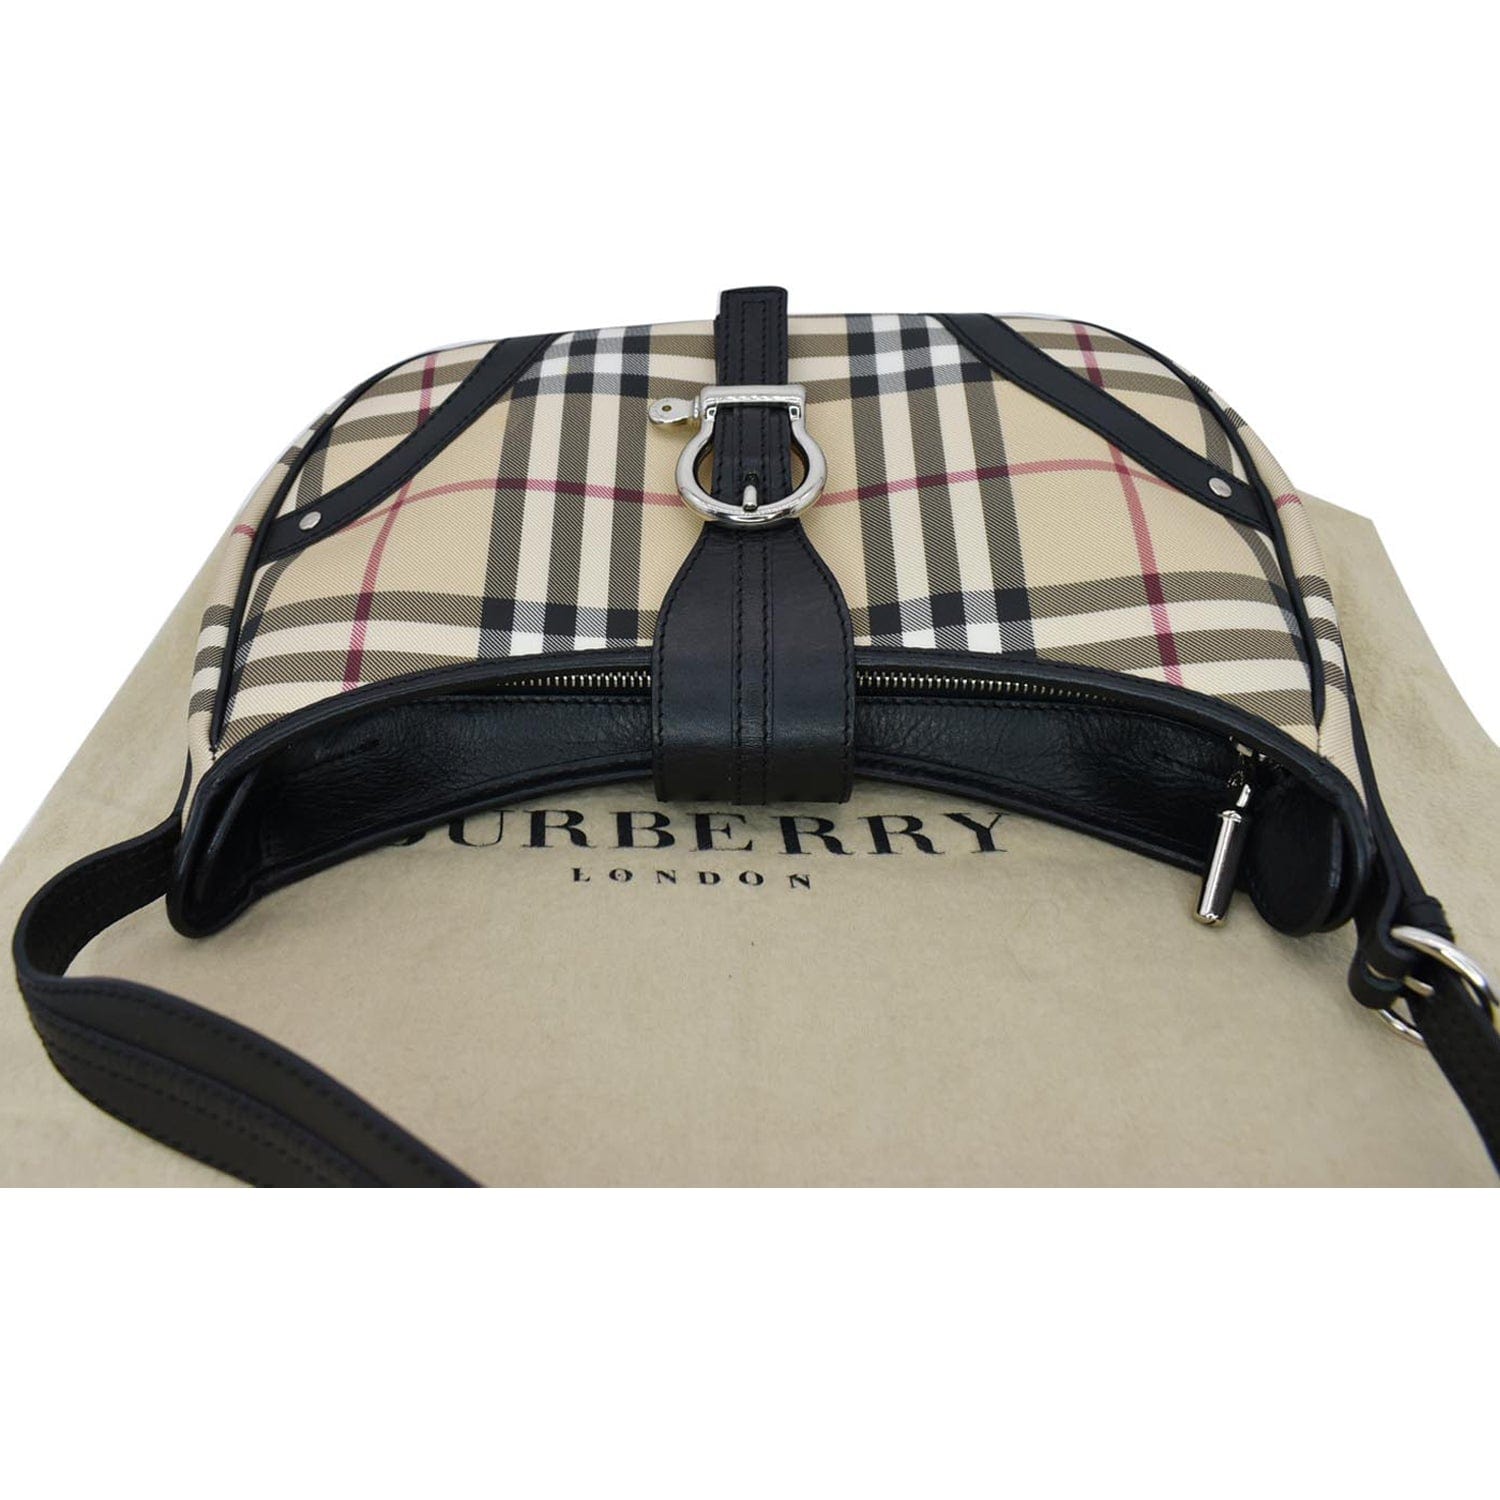 Authentic Burberry shoulder bag Nova Check Black